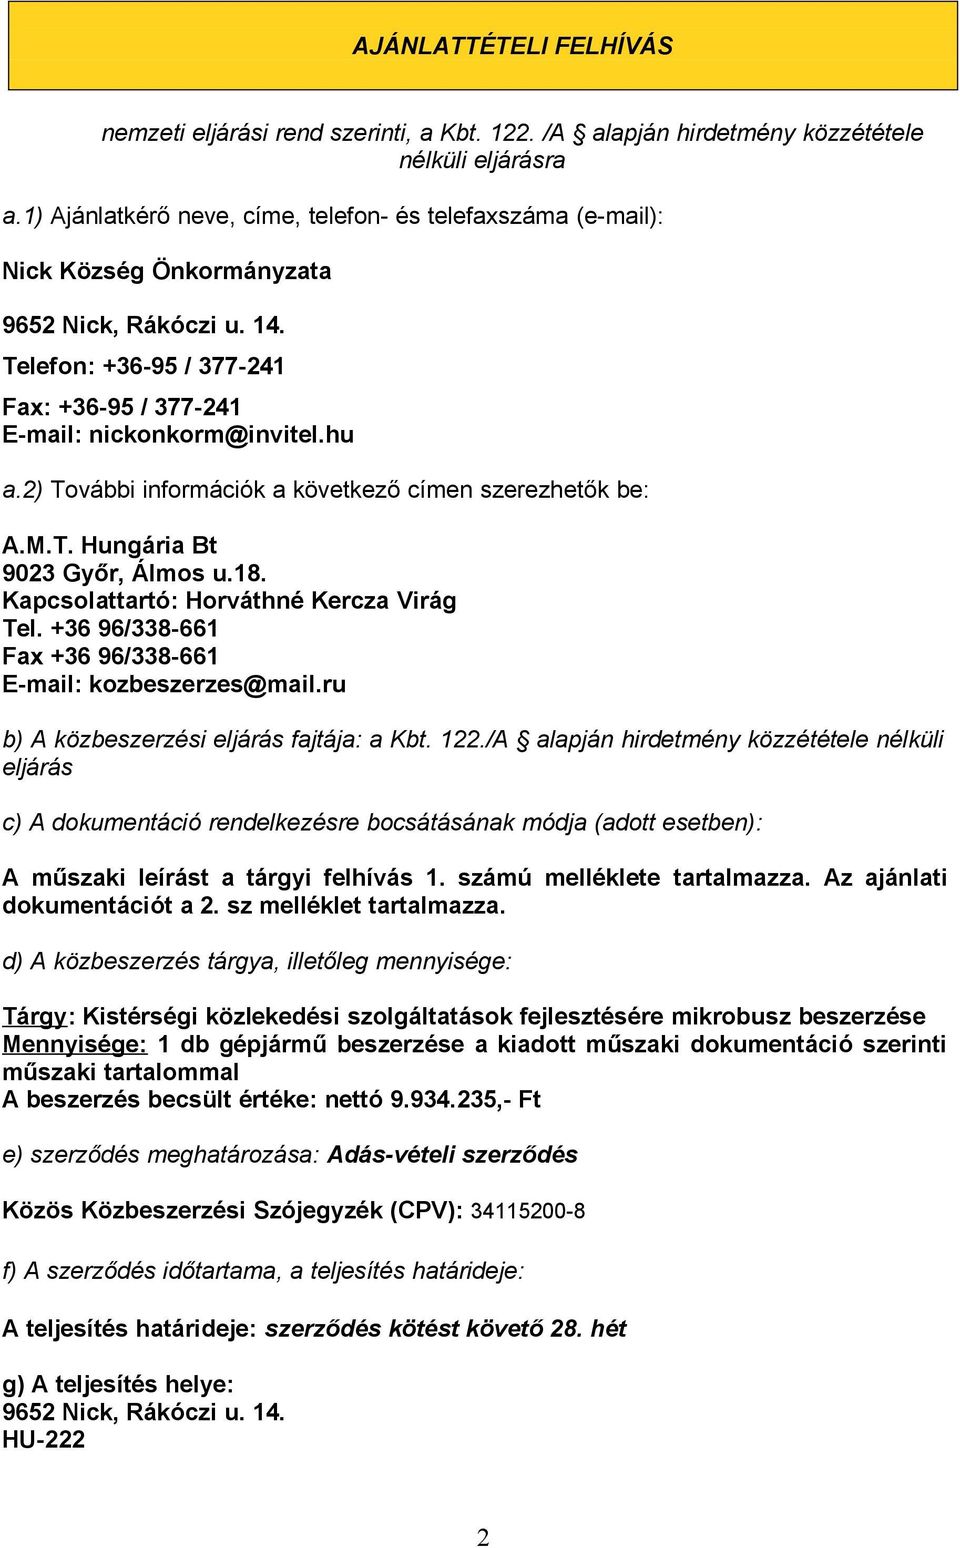 2) További információk a következő címen szerezhetők be: A.M.T. Hungária Bt 9023 Győr, Álmos u.18. Kapcsolattartó: Horváthné Kercza Virág Tel.